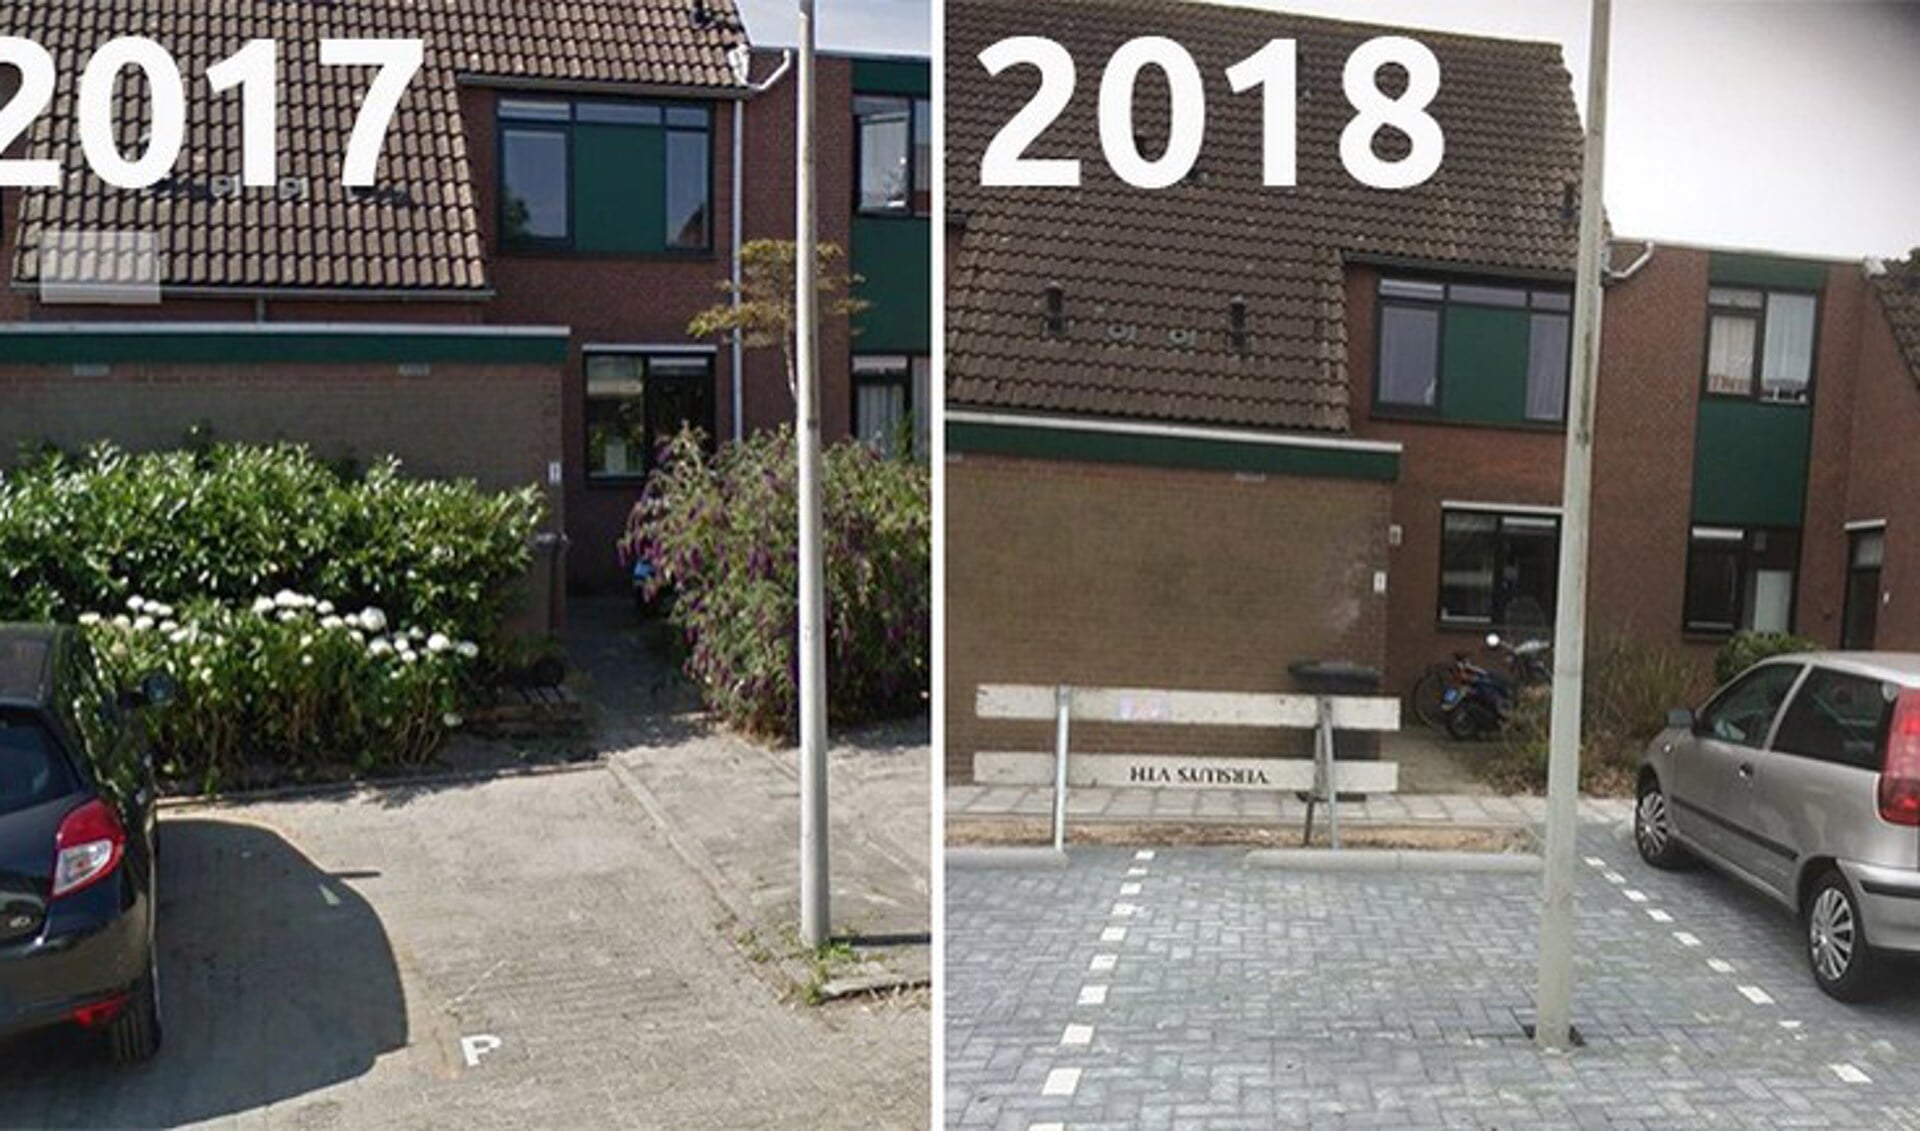 De situatie van het parkeervak voor en na. (Foto 2017: Google Streetview / Foto 2018: Jan Hendriks)